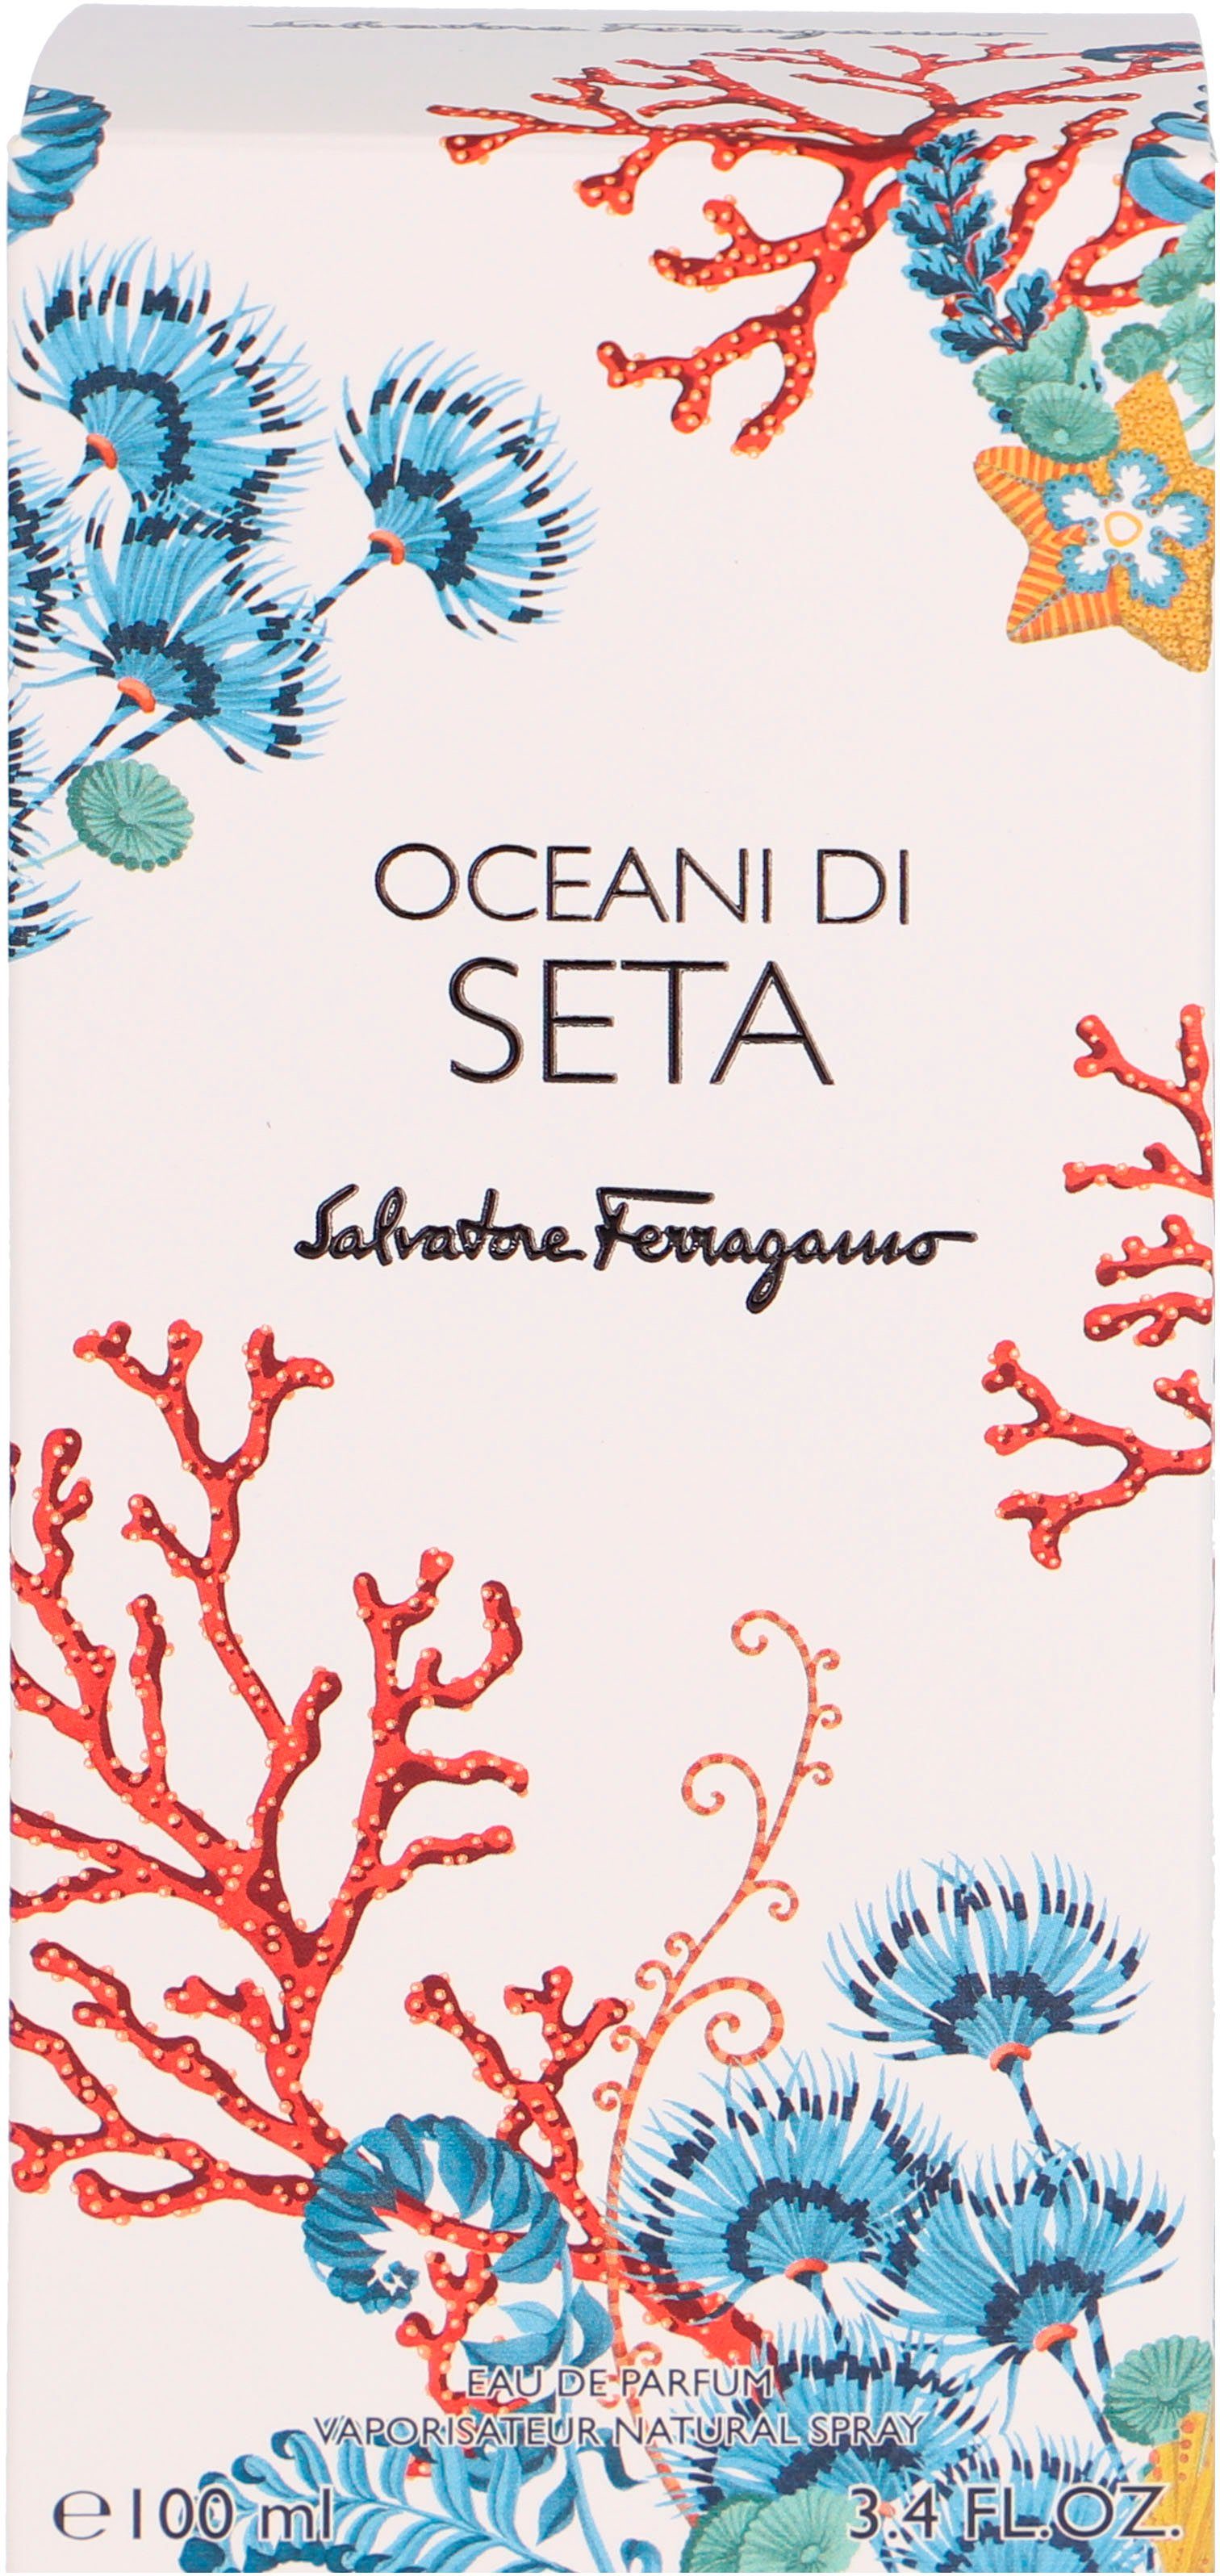 Salvatore Ferragamo Eau Oceani di Parfum de Seta